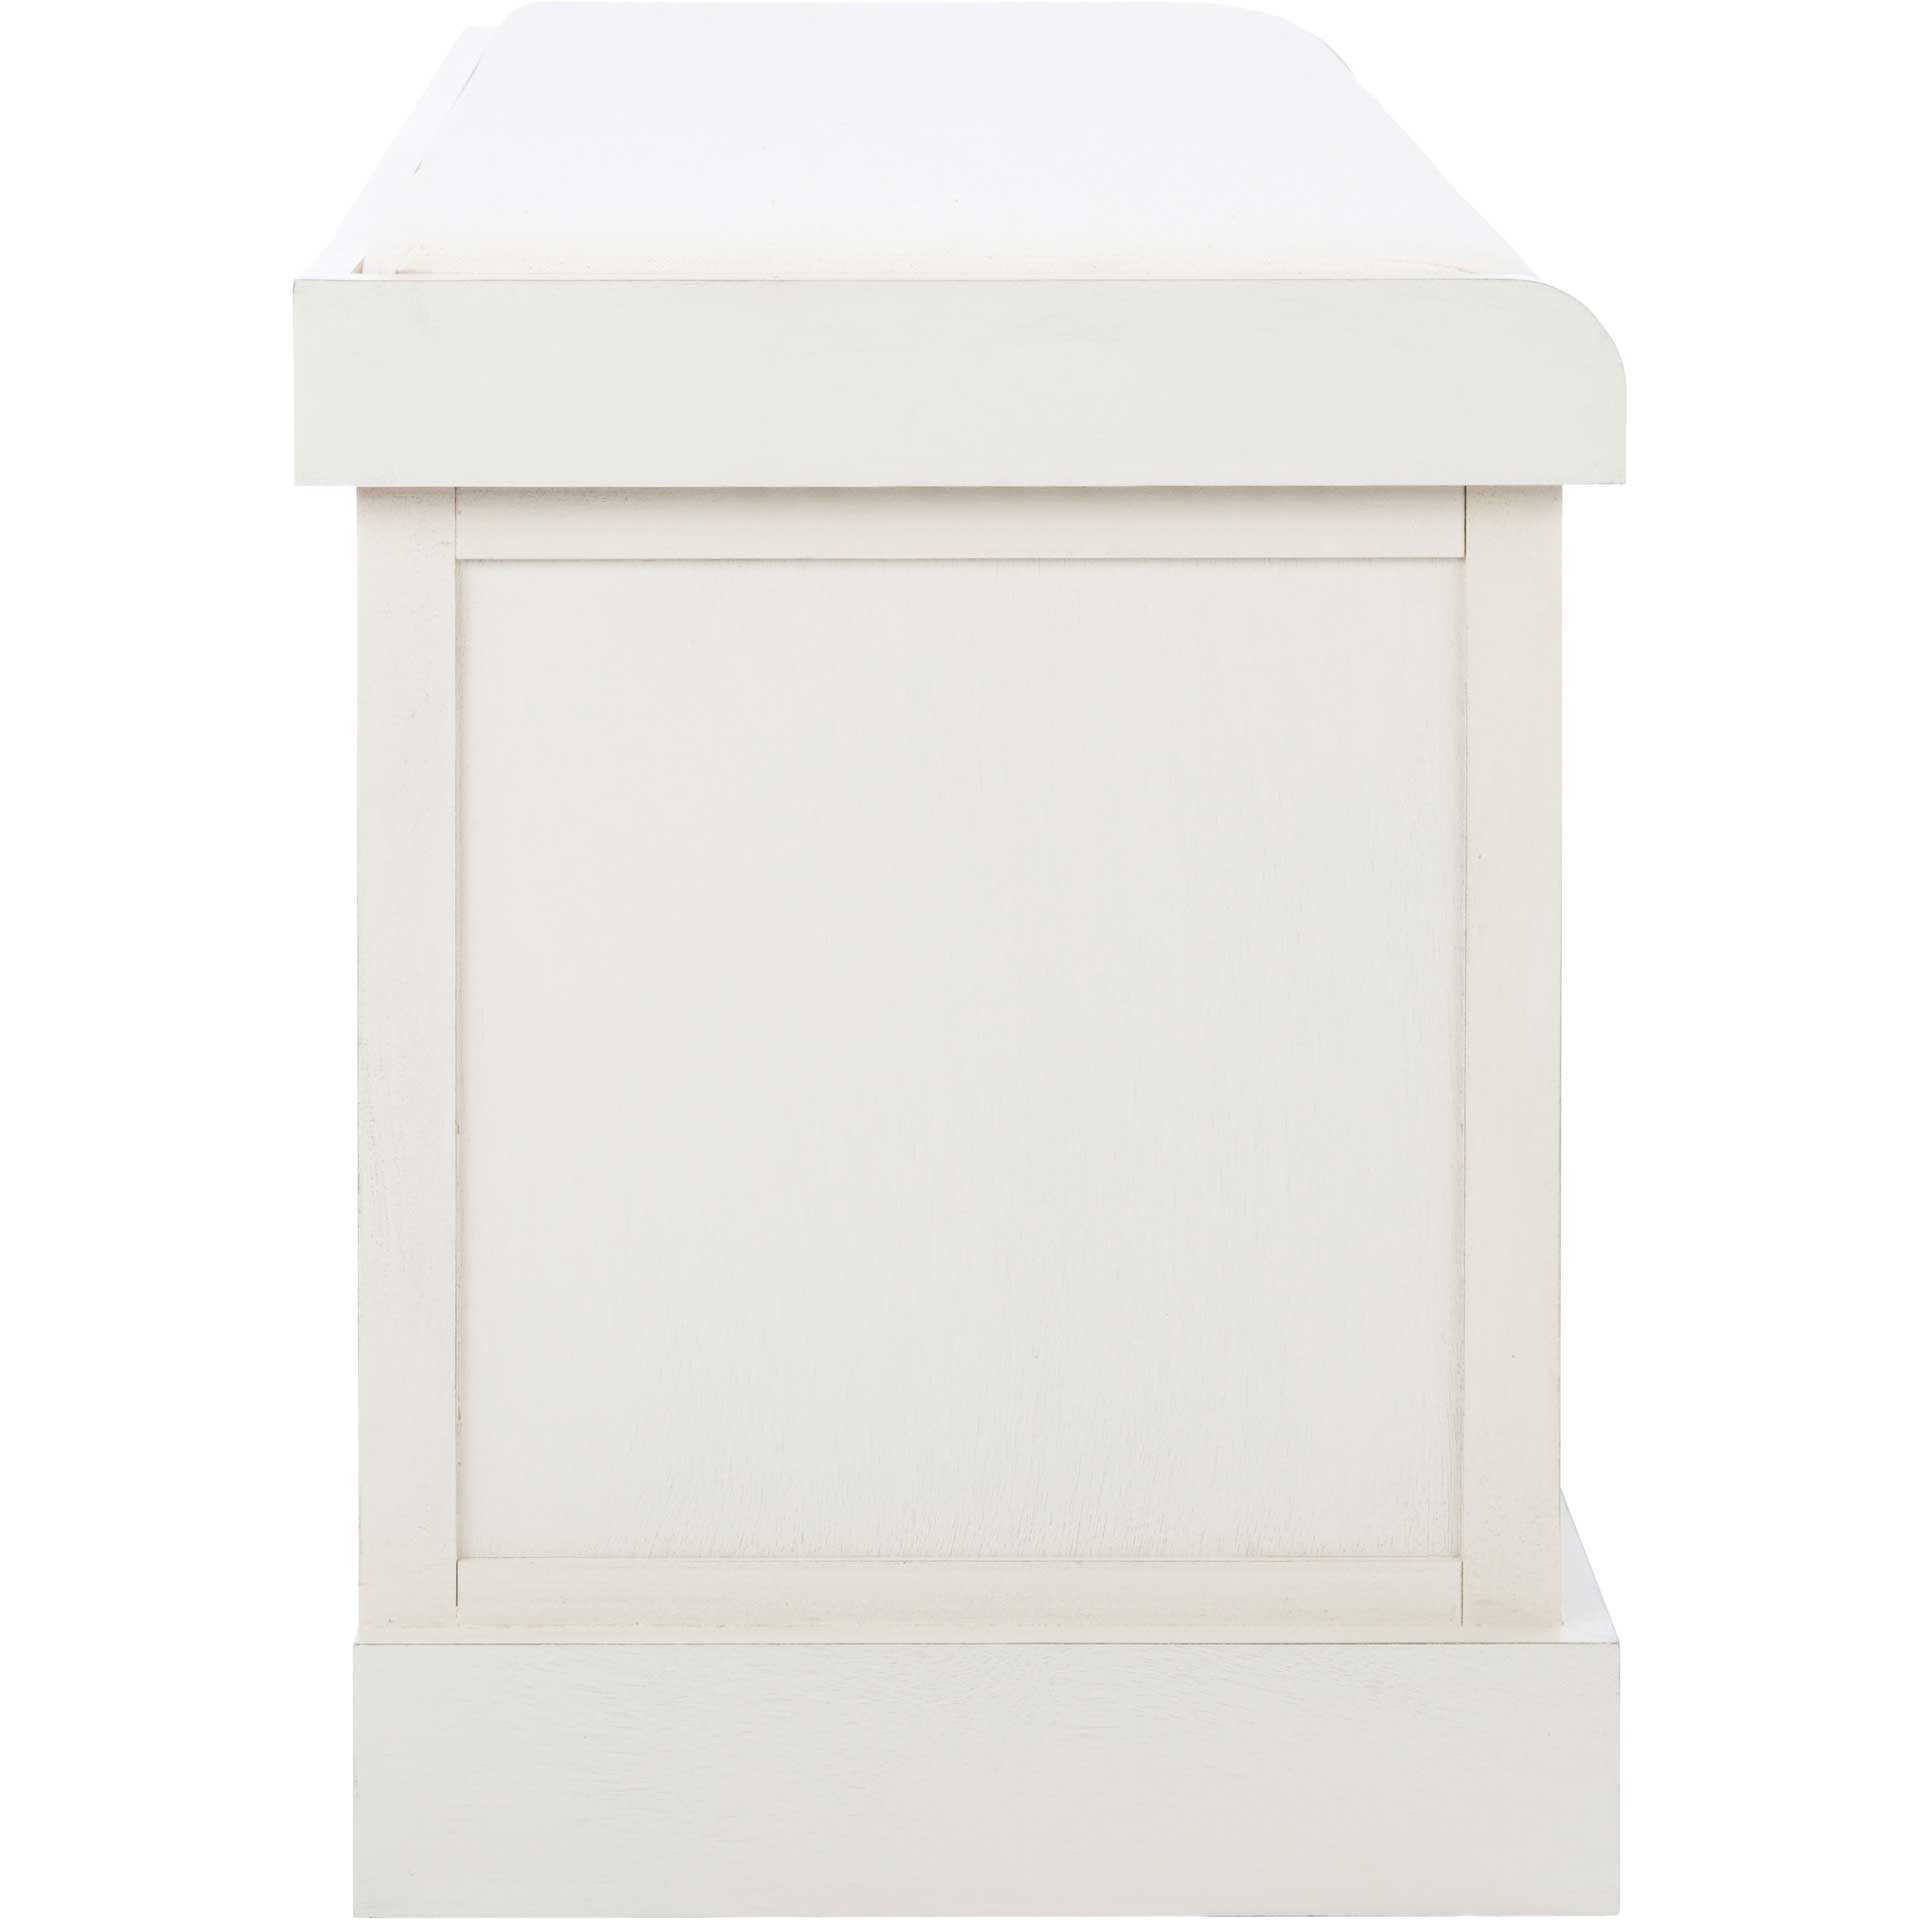 Lali 3 Drawer/Cushion Storage Bench Distressed White